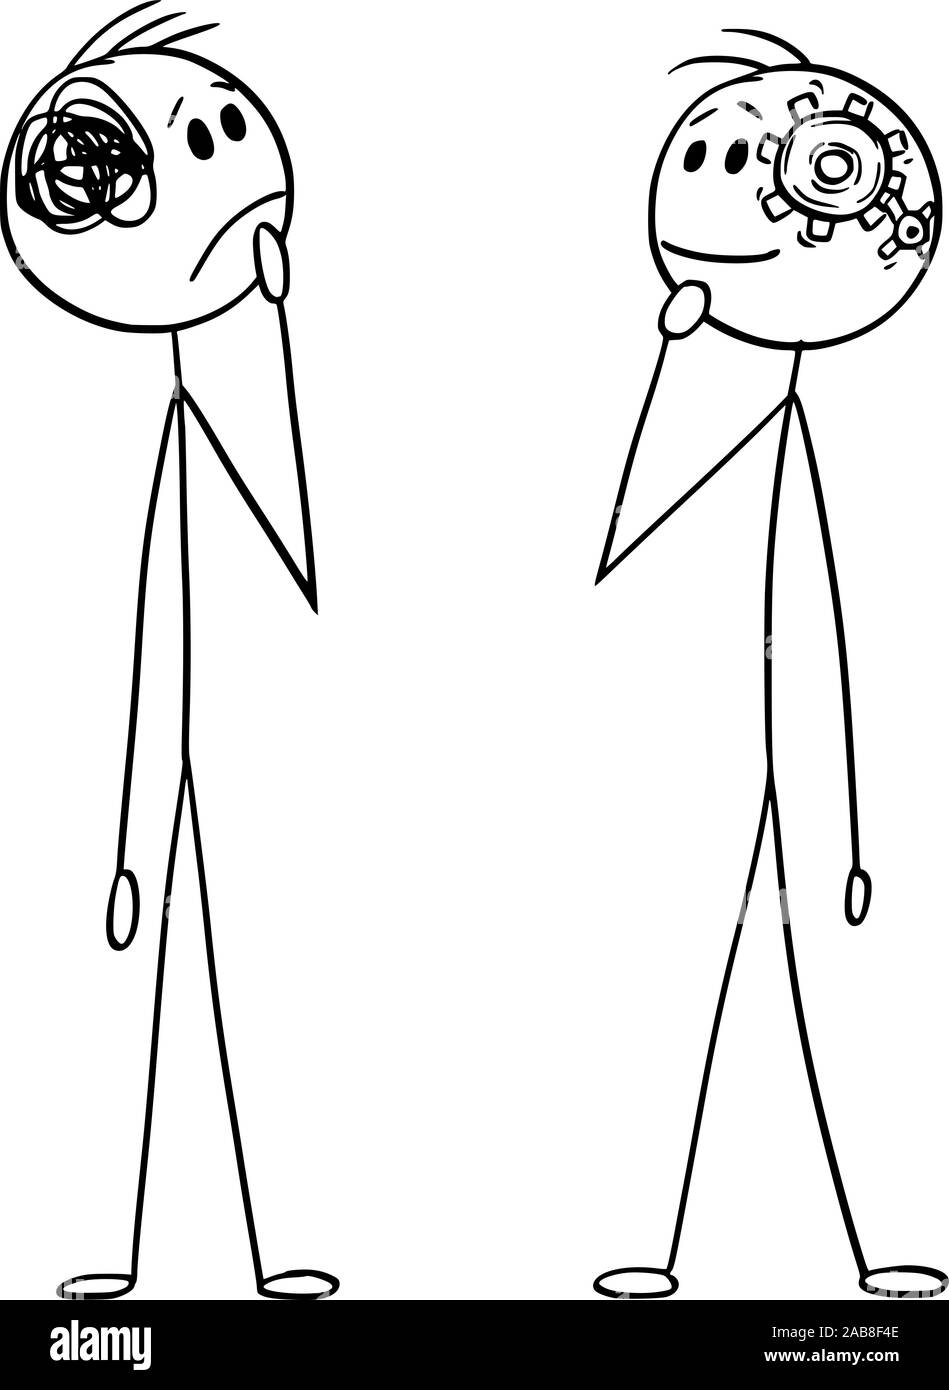 Vektor cartoon Strichmännchen Zeichnung konzeptuelle Abbildung von zwei Männern oder Geschäftsleute denken. Unterschied zwischen Einfache unkomplizierte ordentlich und unordentlich zu denken. Stock Vektor